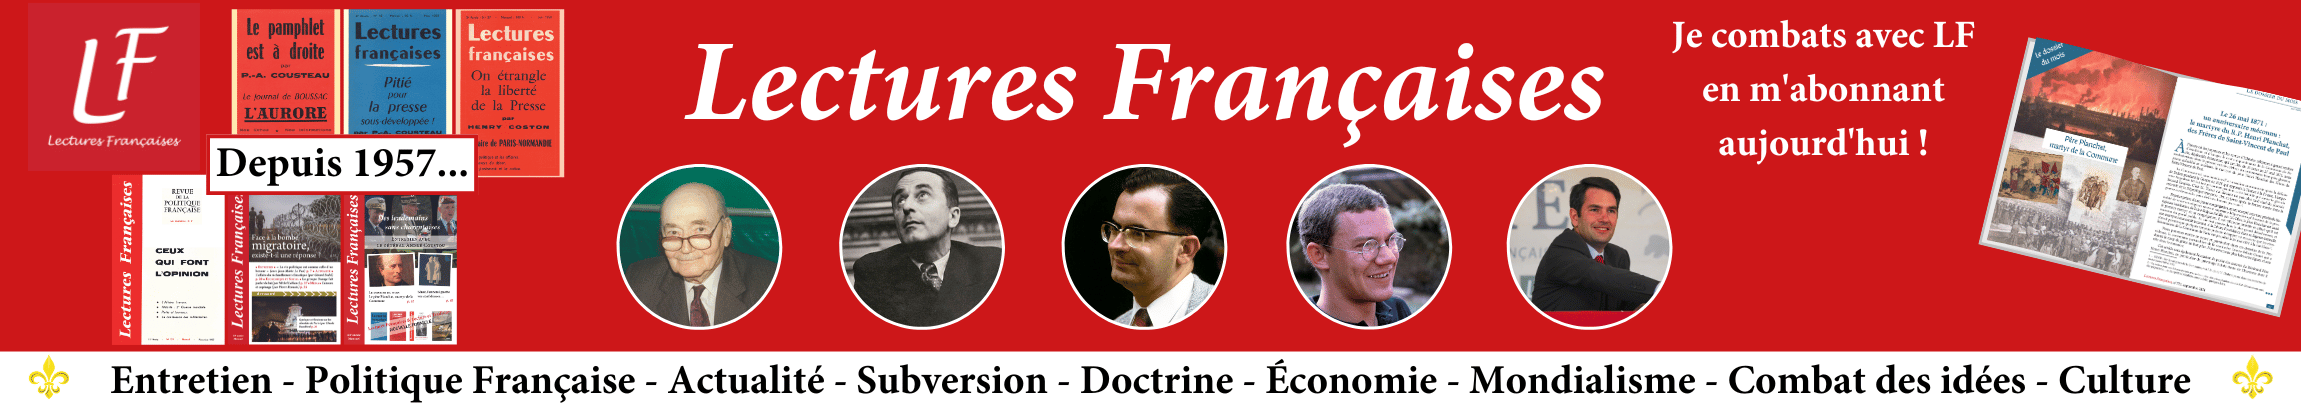 Entretien - Politique Française - Actualité - Subversion - Doctrine -Economie - Mondialisme - Combat des idées - Culture (2301 x 408 px)